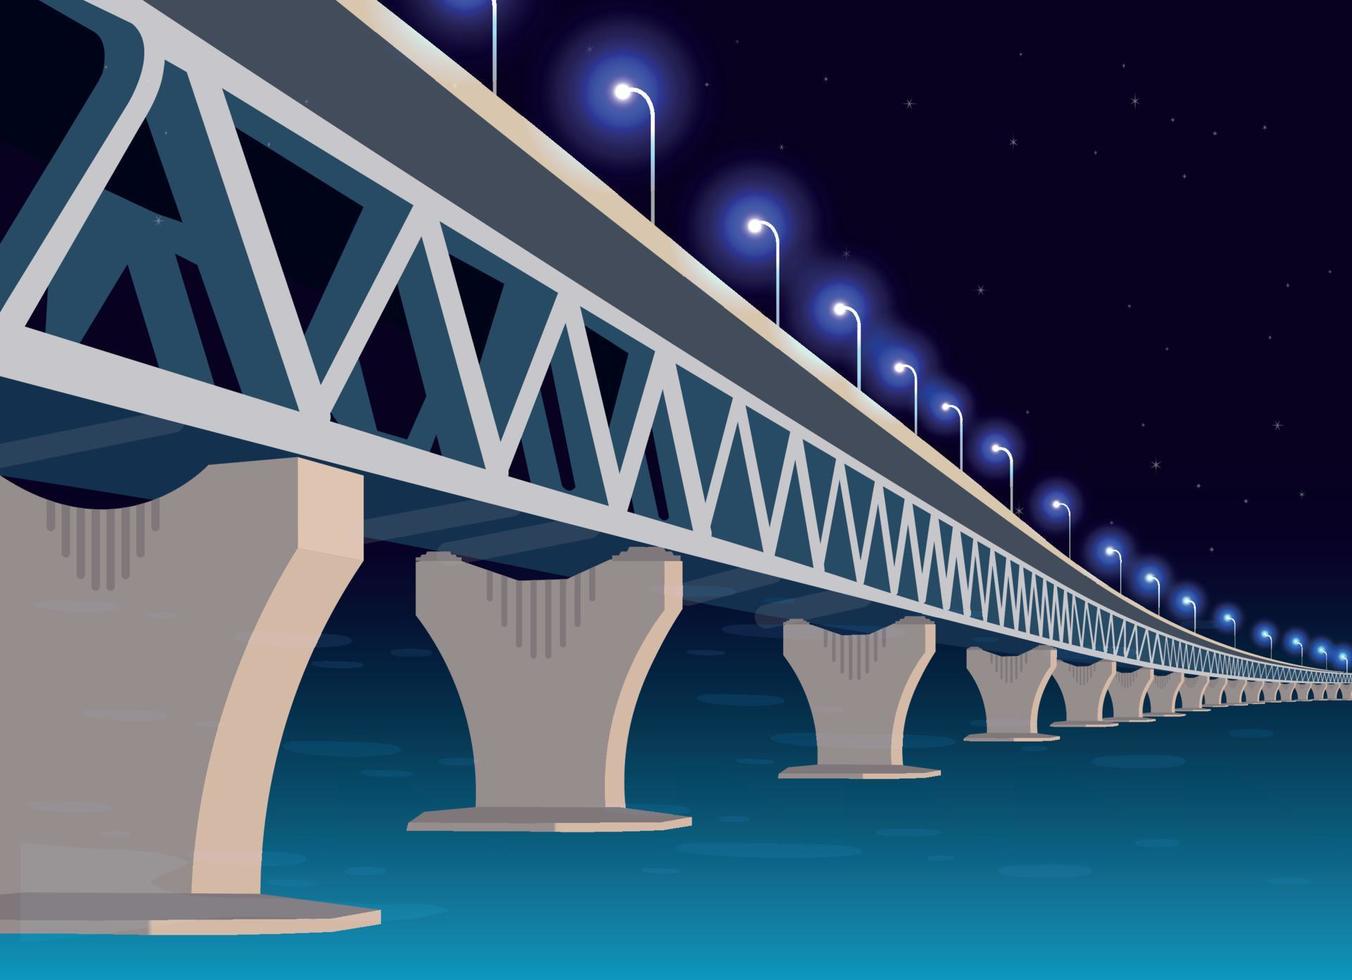 Abbildung der Padma-Brücke in Bangladesch vektor